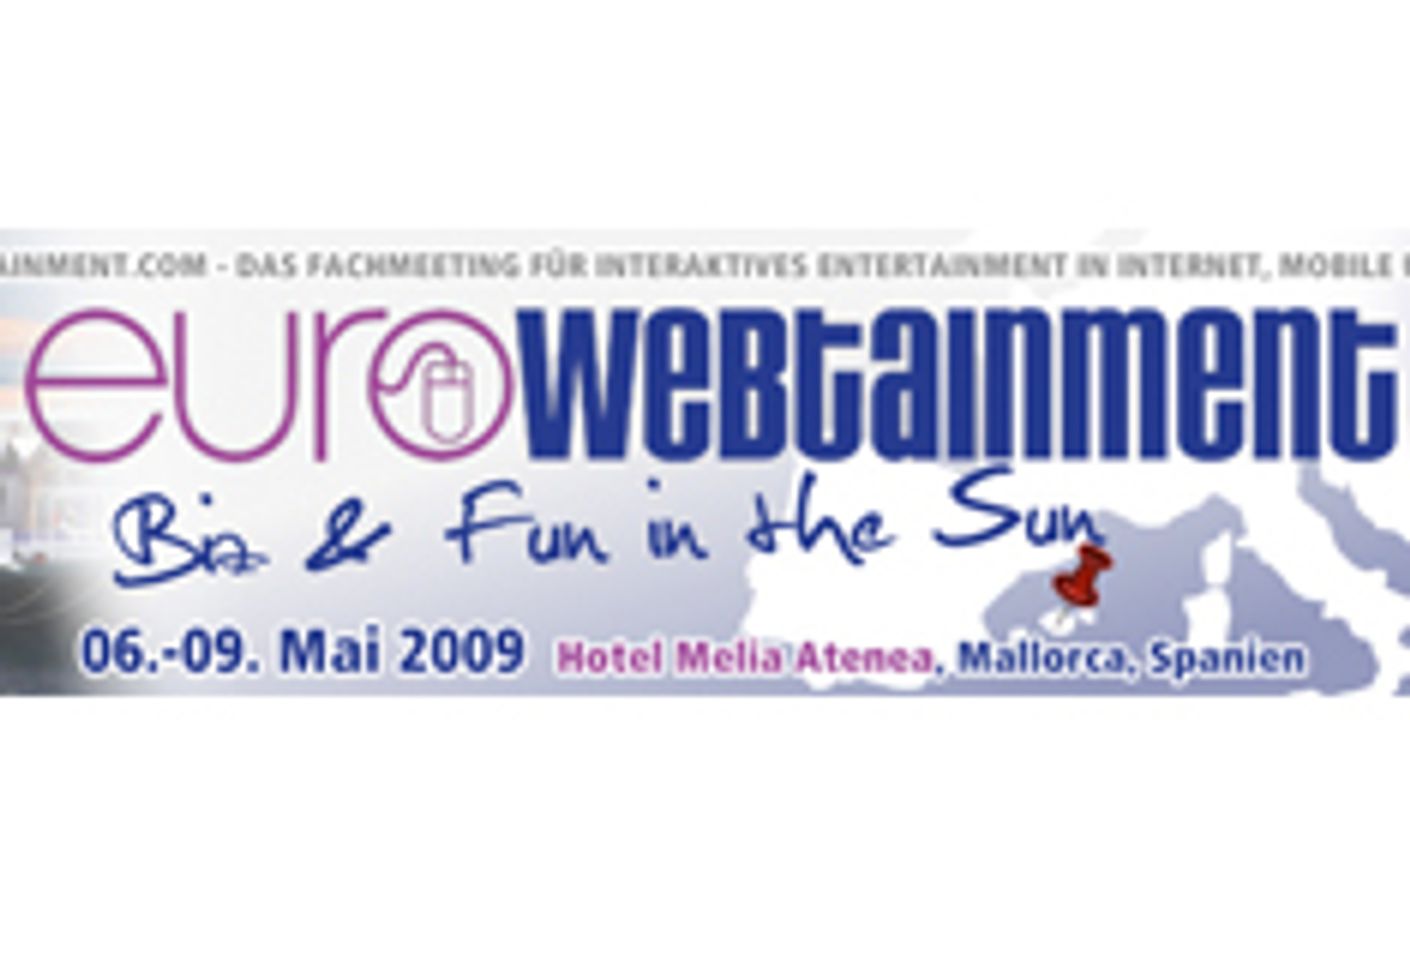 Eurowebtainment Majorca a Success, Next Show Set for November